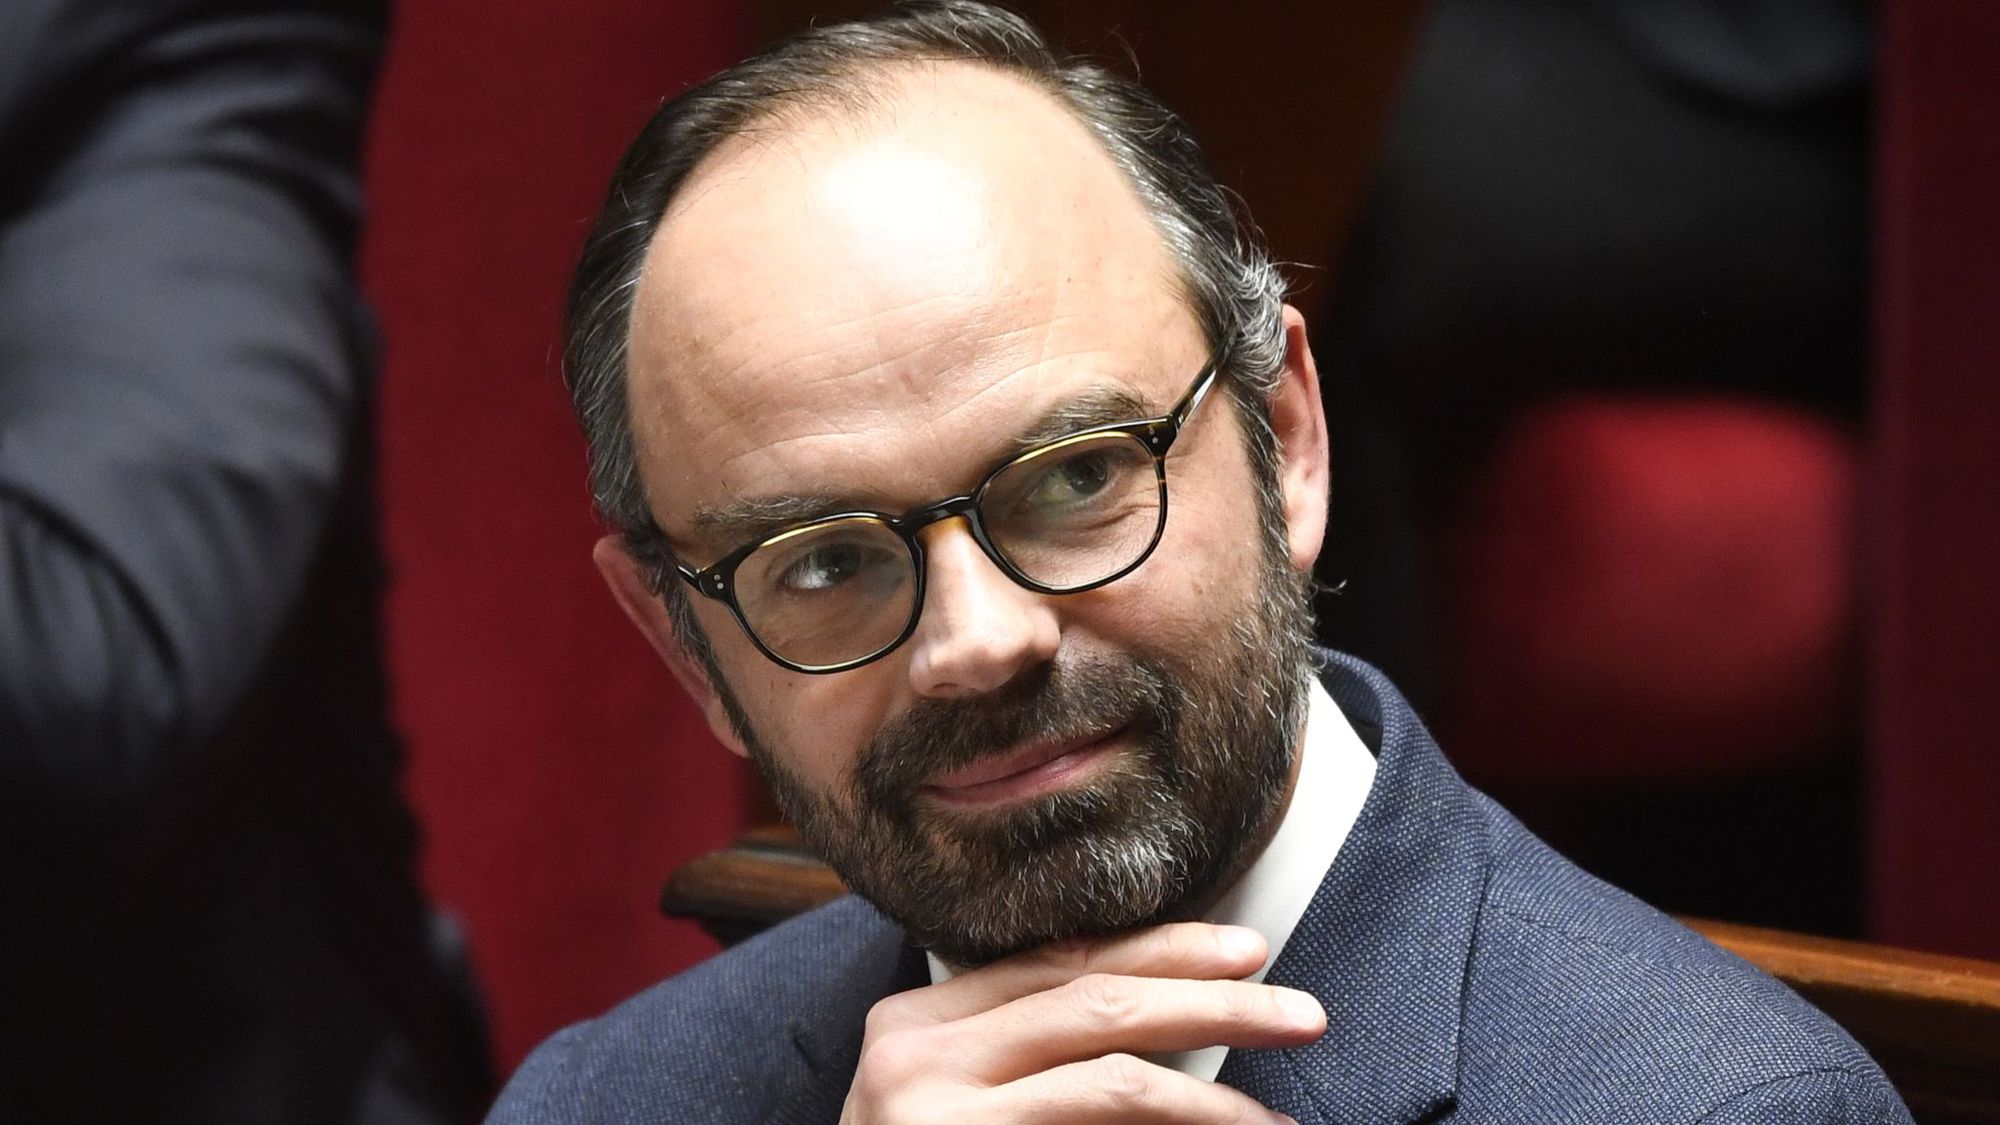 Les membres du gouvernement encore méconnus d'une majorité de Français - L'Express